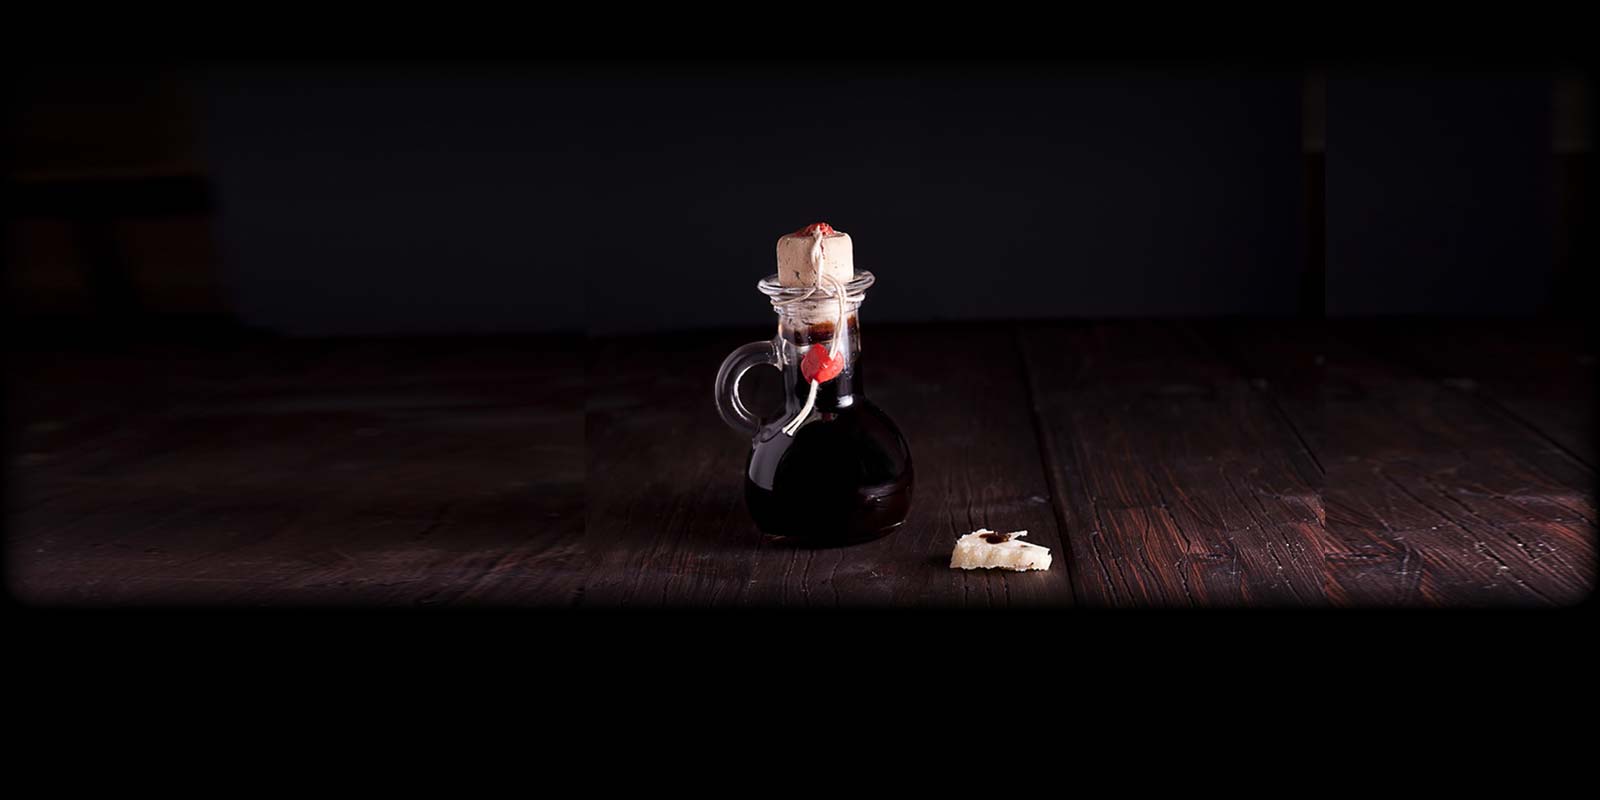 Aceto Balsamico Tradicional Este vinagre e um produto puramente natural, livre de conservantes e corantes. Apenas cerca de 10.000 litros sao produzidos por ano, o que o torna um dos vinagres mais raros e valiosos do mundo.